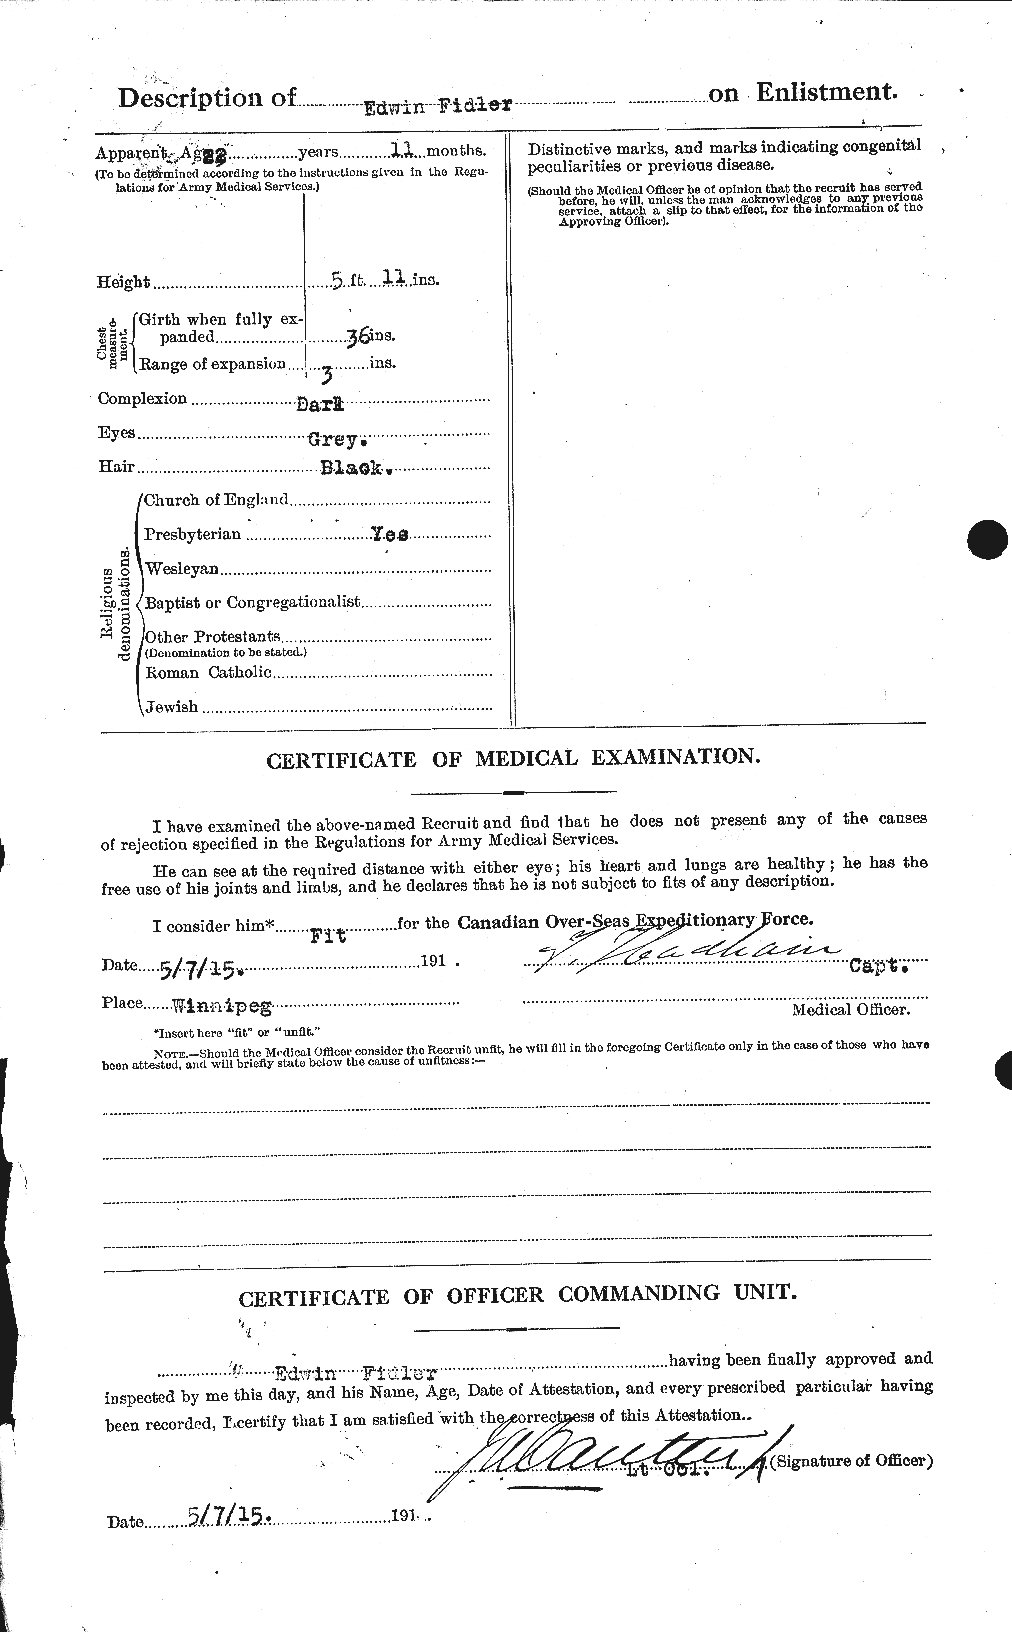 Dossiers du Personnel de la Première Guerre mondiale - CEC 322948b